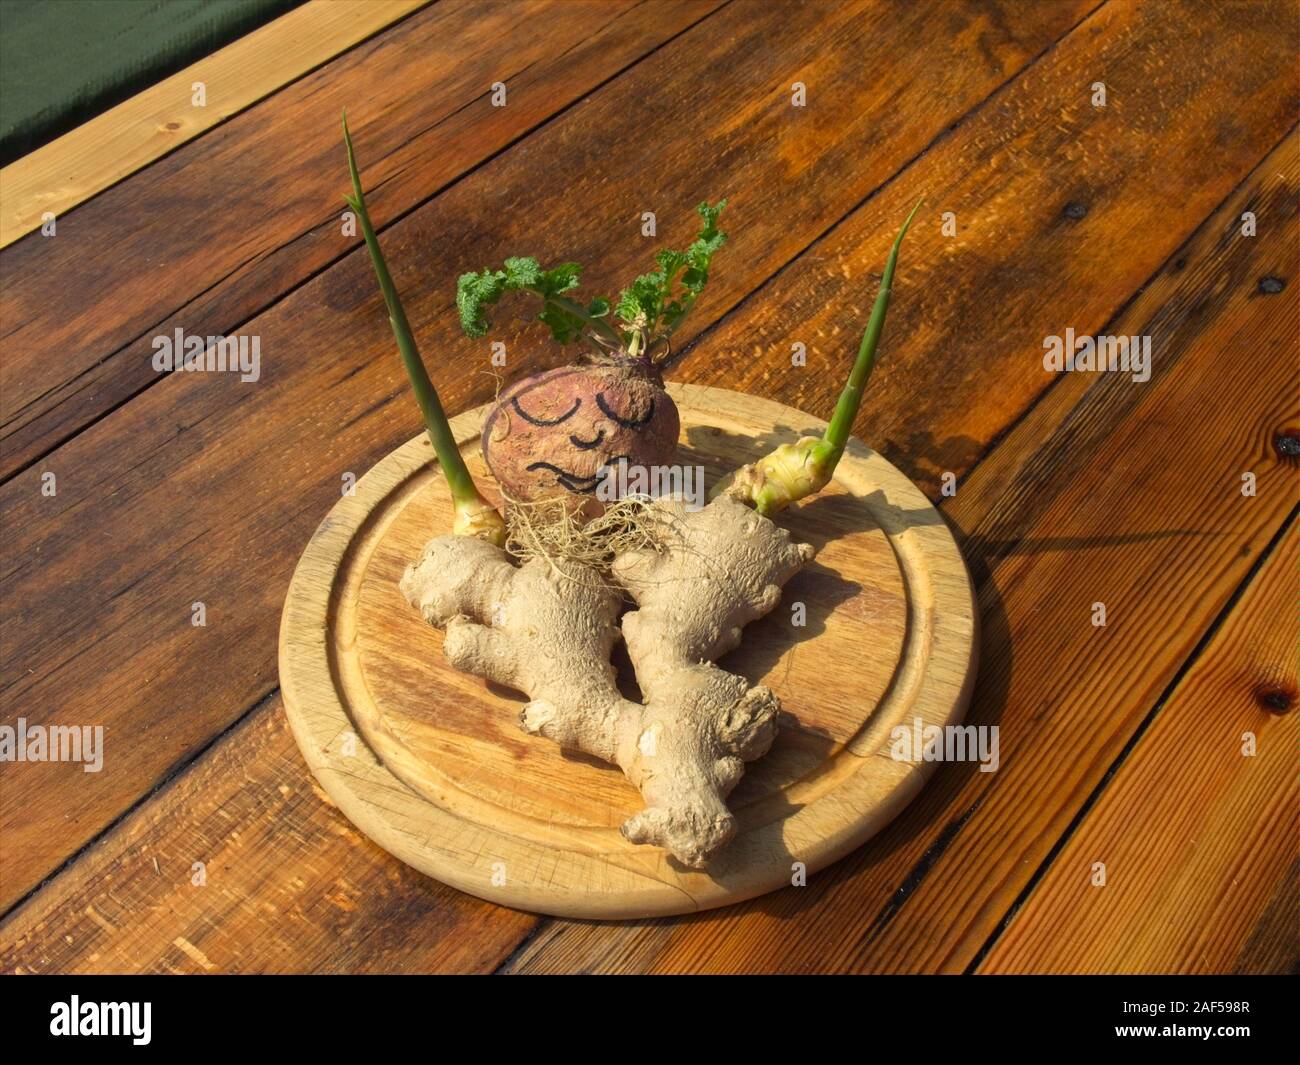 Arrangement avec le gingembre et racine de betterave sur un dessus de table. Banque D'Images